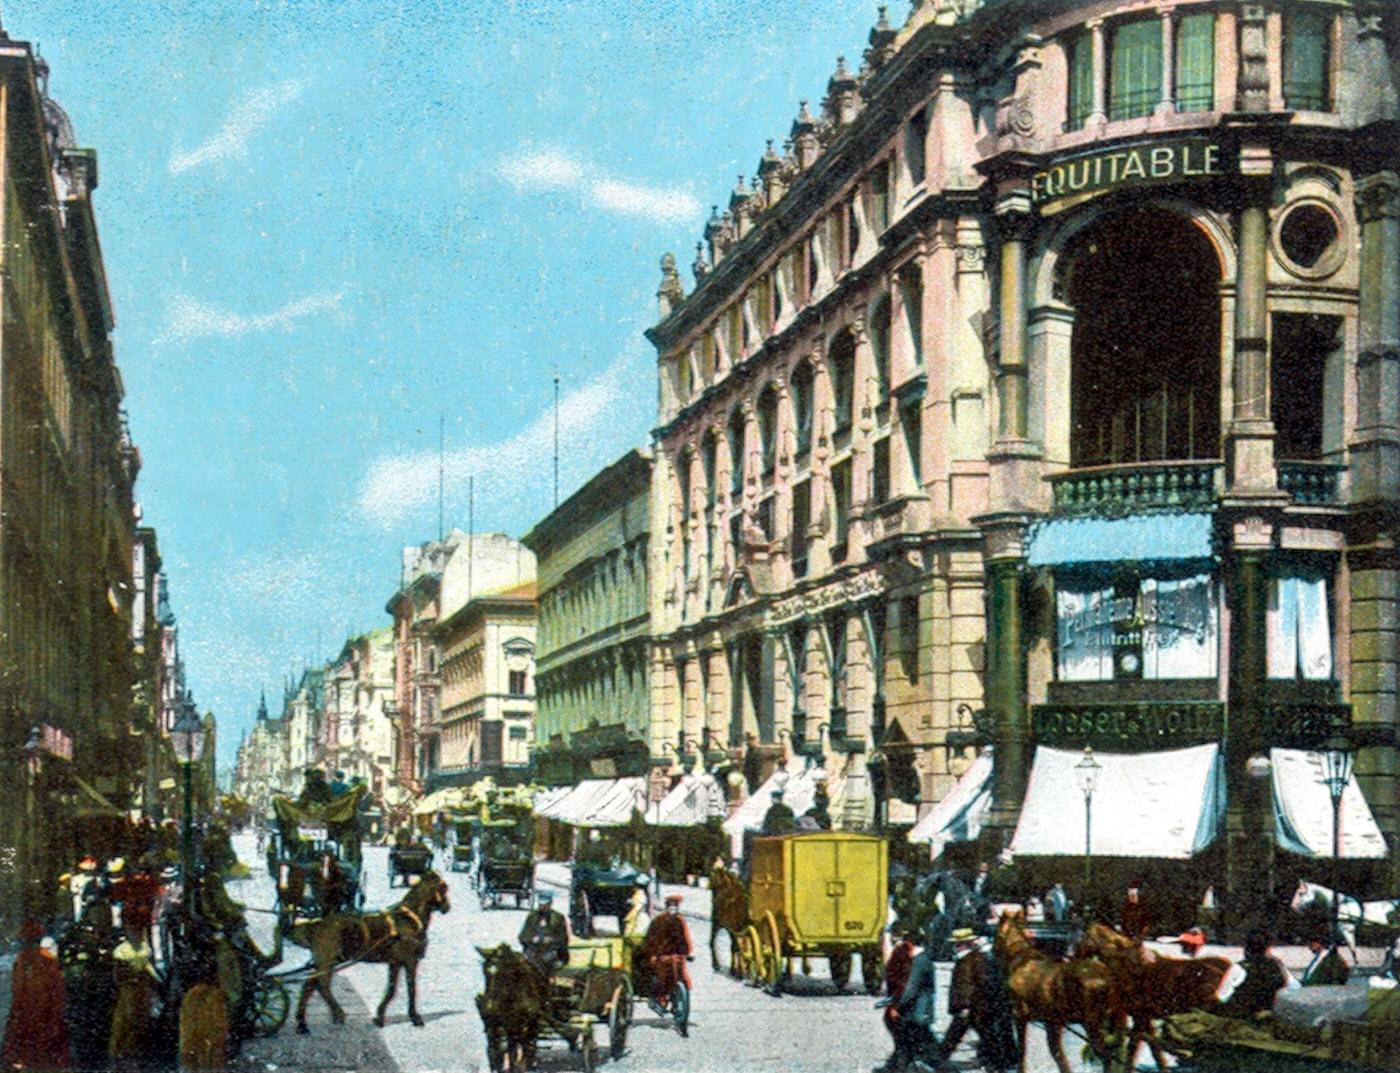 Friedrichstrasse in Berlin, German Empire Kingdom Prussia, 1890s